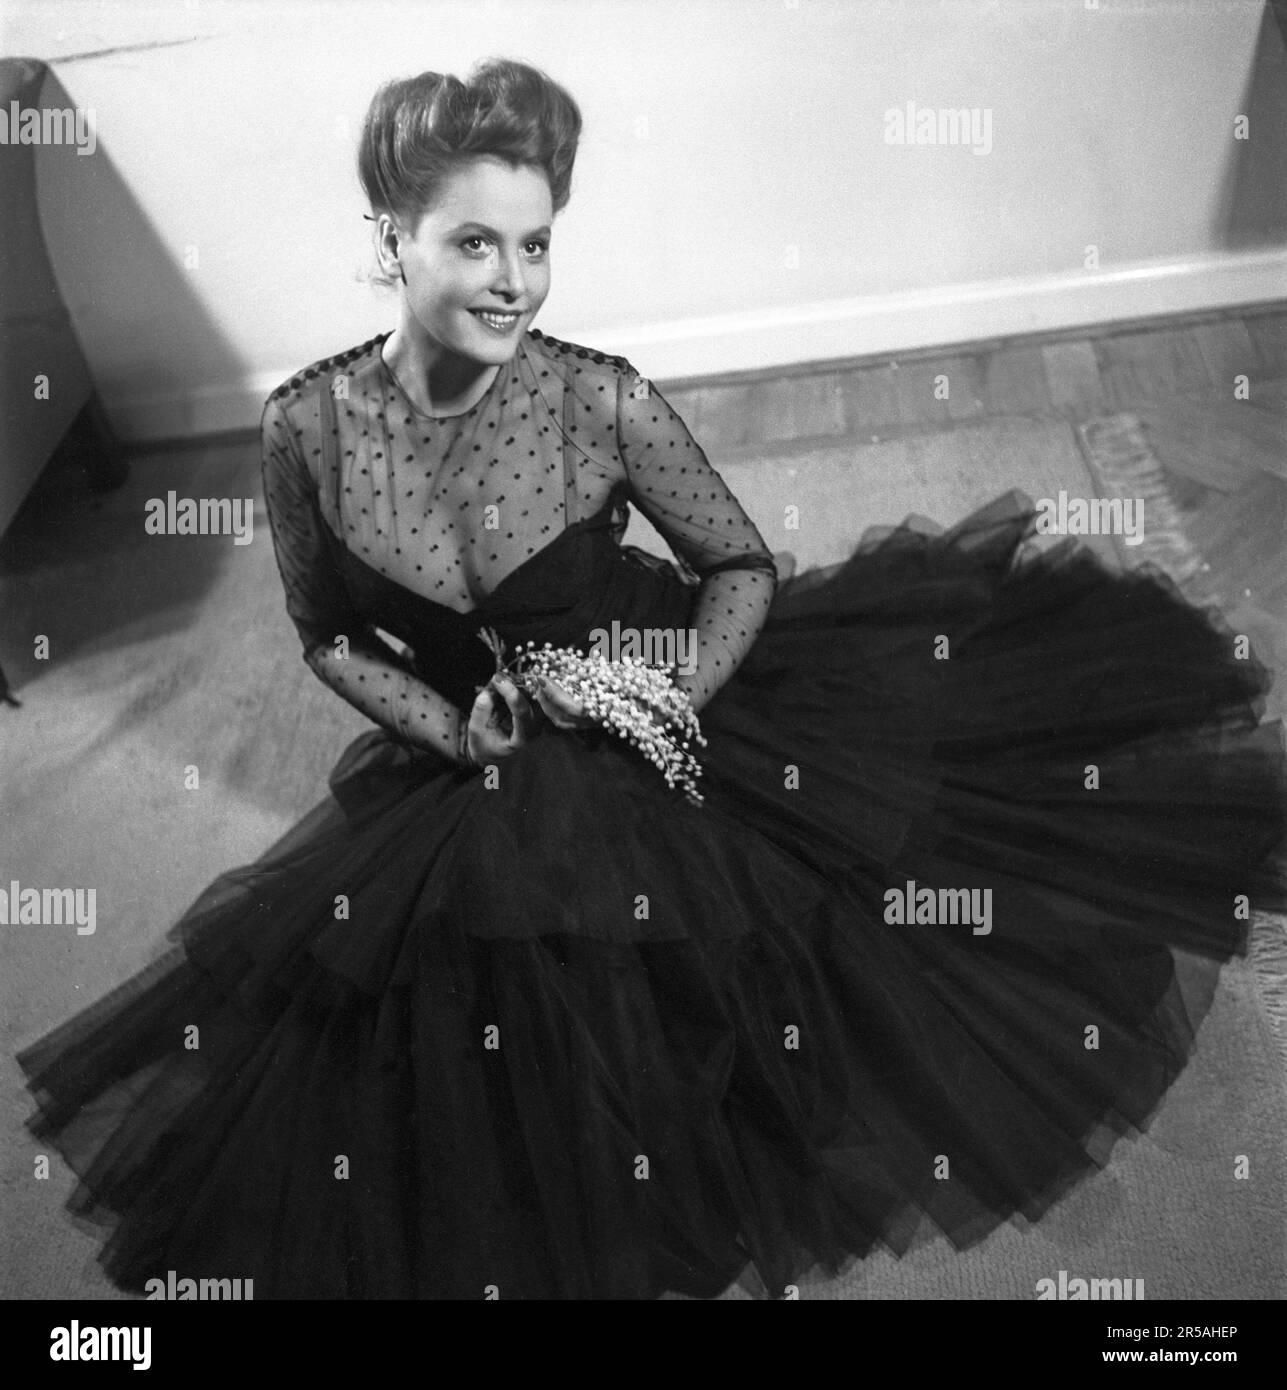 La mode des femmes en 1940s. Une jeune femme dans une robe de soirée typique de 1940s, une robe de soirée de fête noire avec un haut transparent dans un tissu qui voit à travers avec des points décoratifs noirs dessus. Elle est actrice Birgit Tengroth 1915-1983. Suède 1944. Kristoffersson Réf. B145-1 Banque D'Images